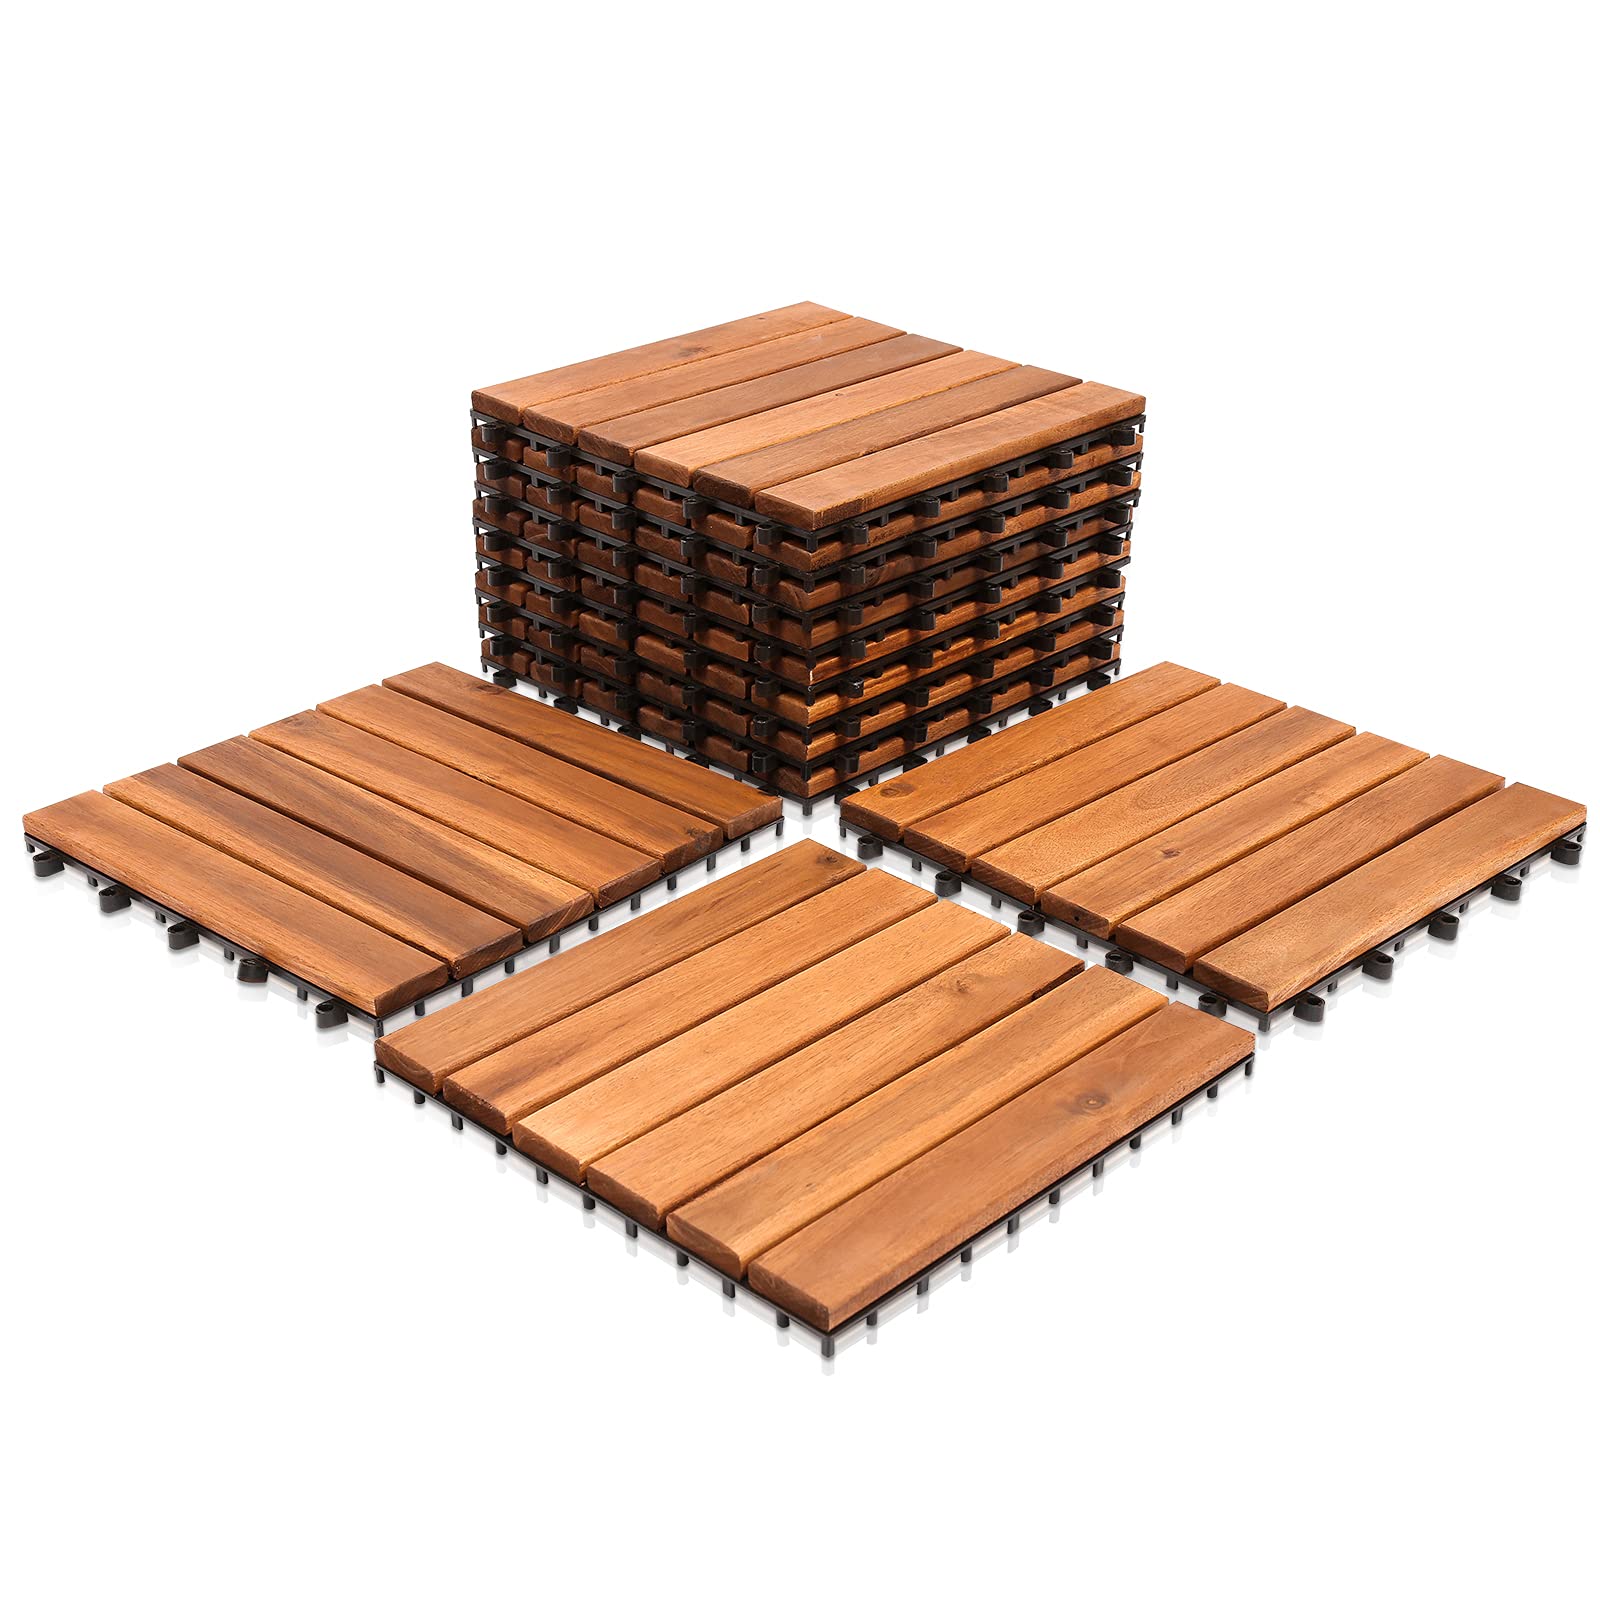 SWANEW Holzfliesen 44-er Kachel Set,4m², geeignet als Terrassenfliesen und Balkonfliesen, aus Akazien Holz, 30x30 cm, für Garten Terrasse Balkon